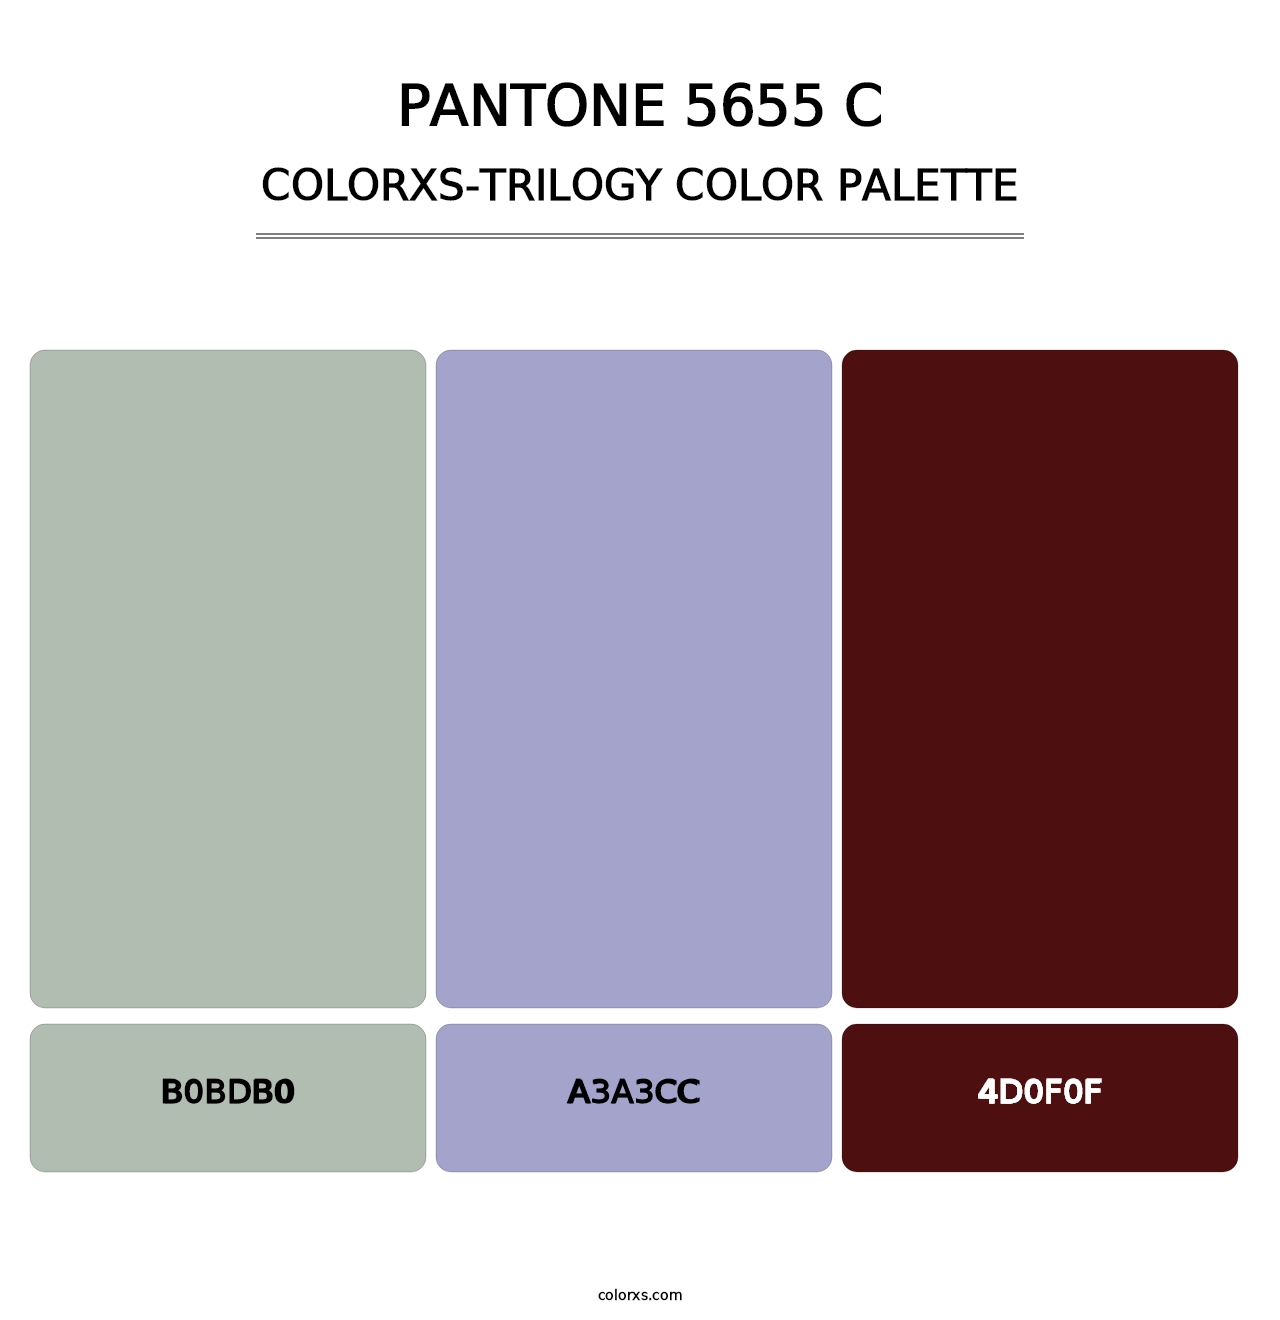 PANTONE 5655 C - Colorxs Trilogy Palette